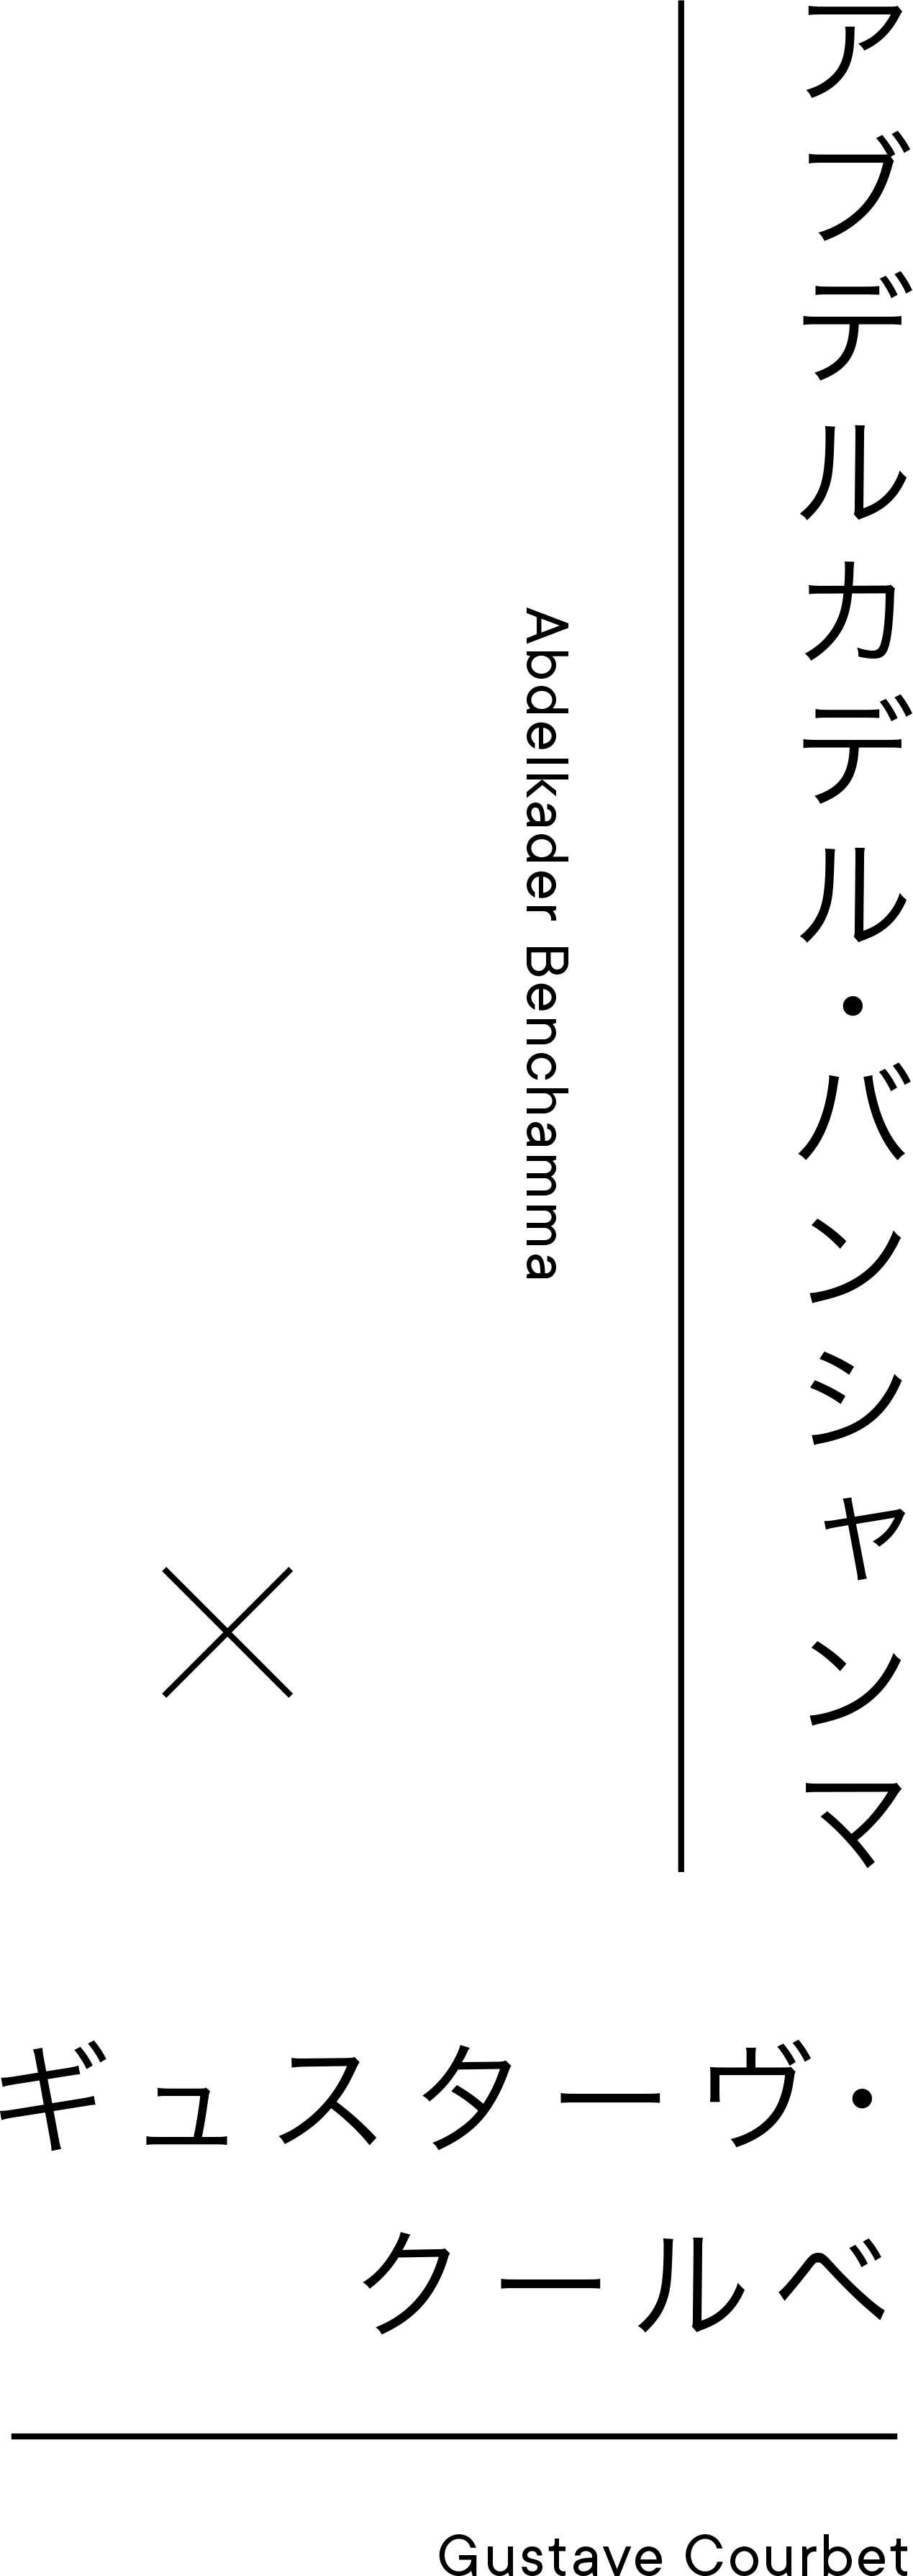 アブデルカデル・バンシャンマ | Abdelkader Benchamma × ギュスターヴ・クールベ | Gustave Courbet